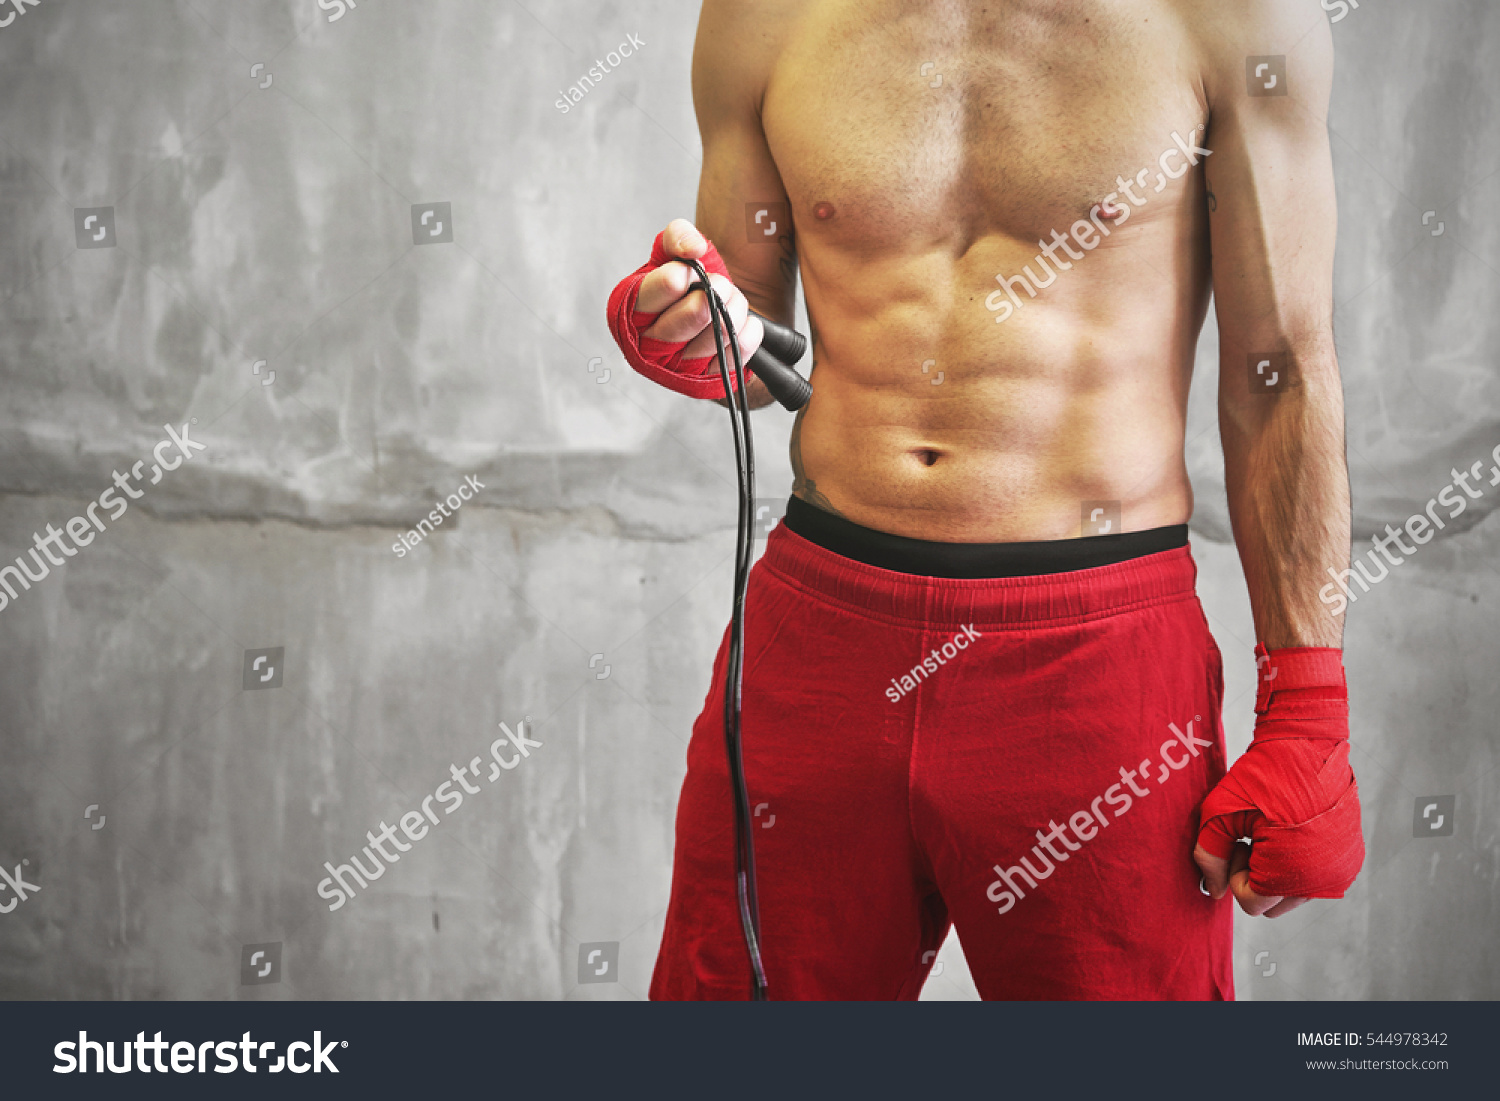 Для тренировки боксеров используют набитые